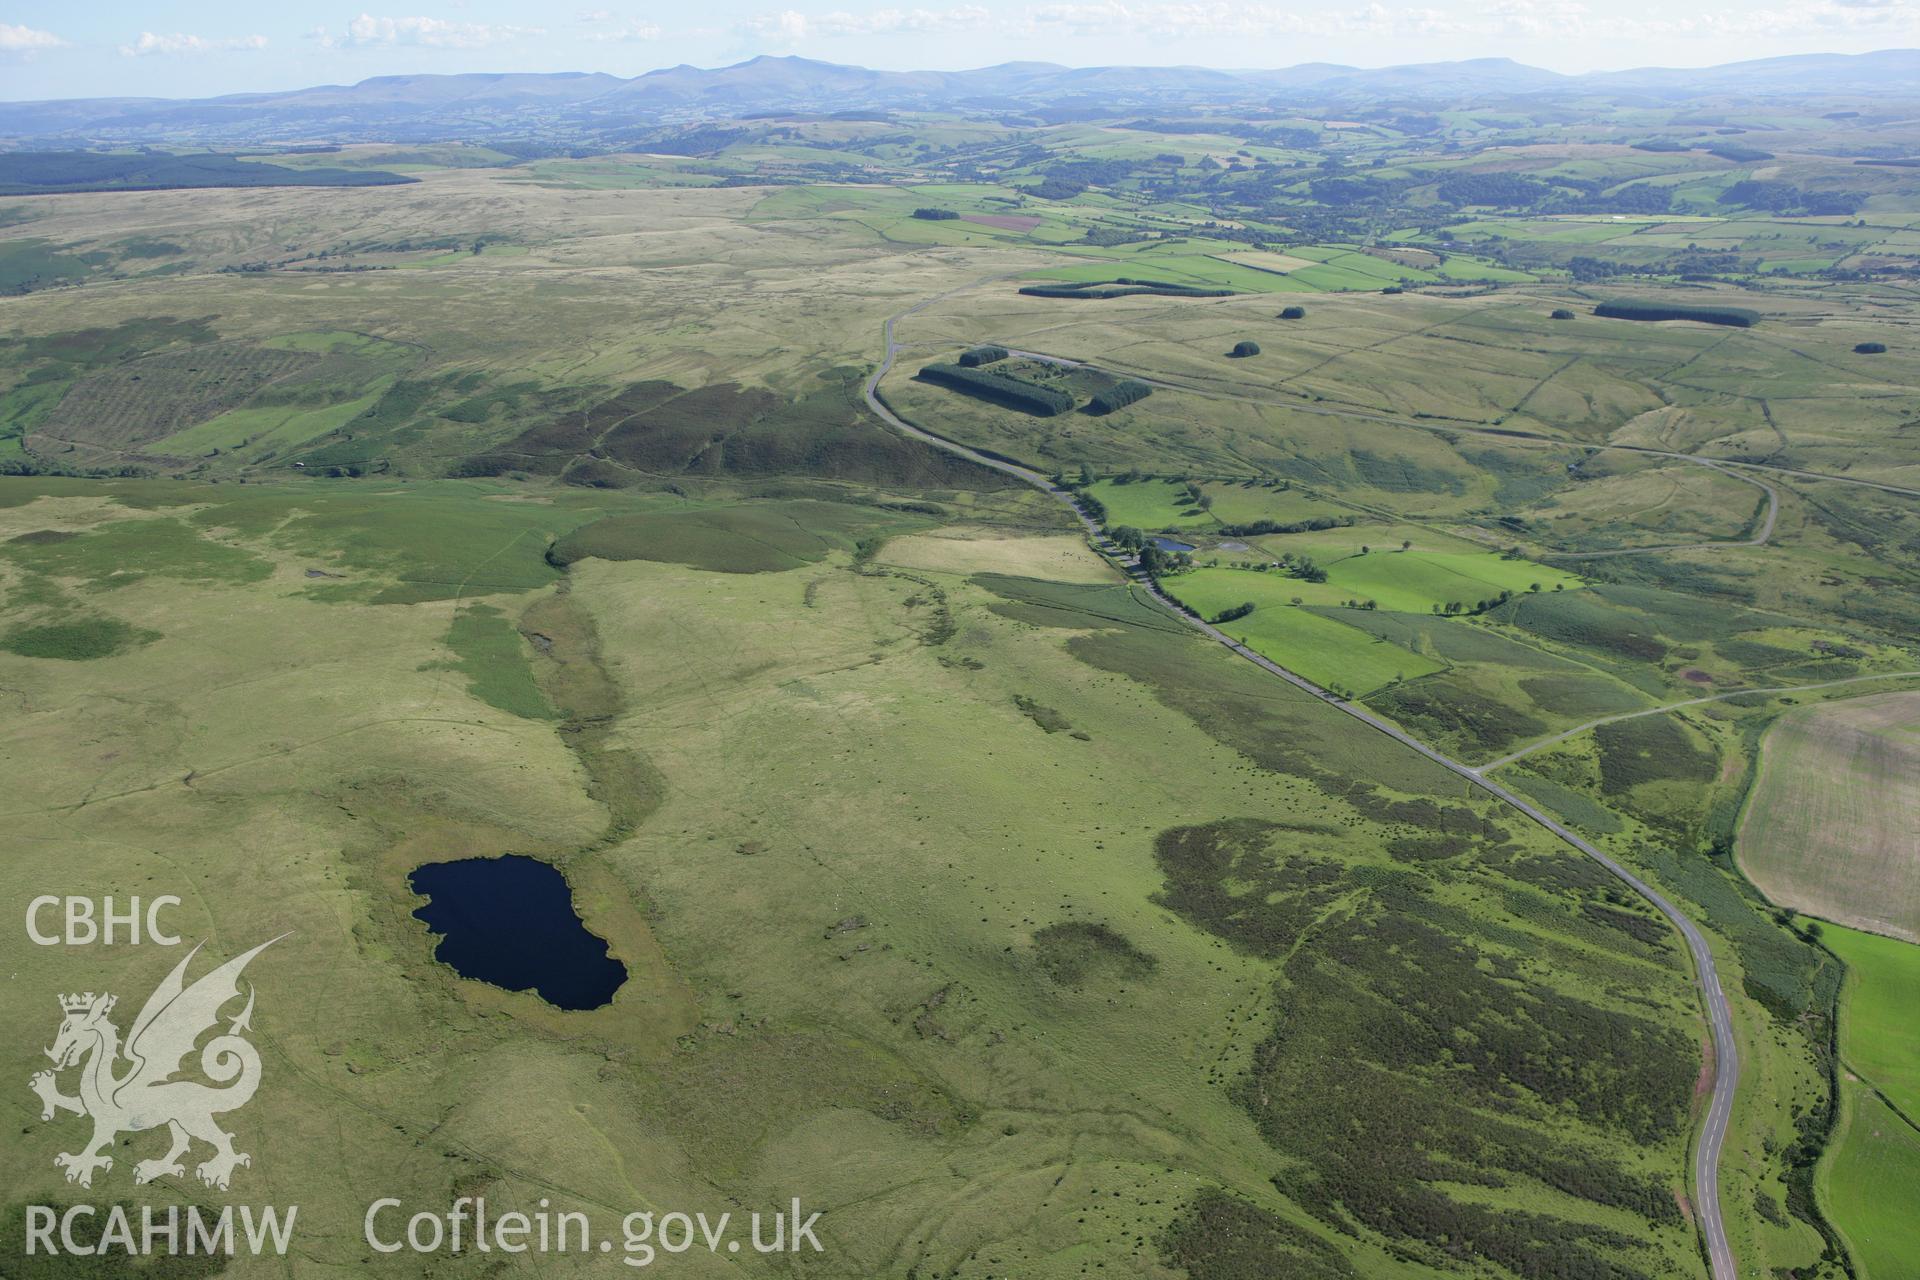 RCAHMW colour oblique aerial photograph of Cwm Owen landscape. Taken on 08 August 2007 by Toby Driver